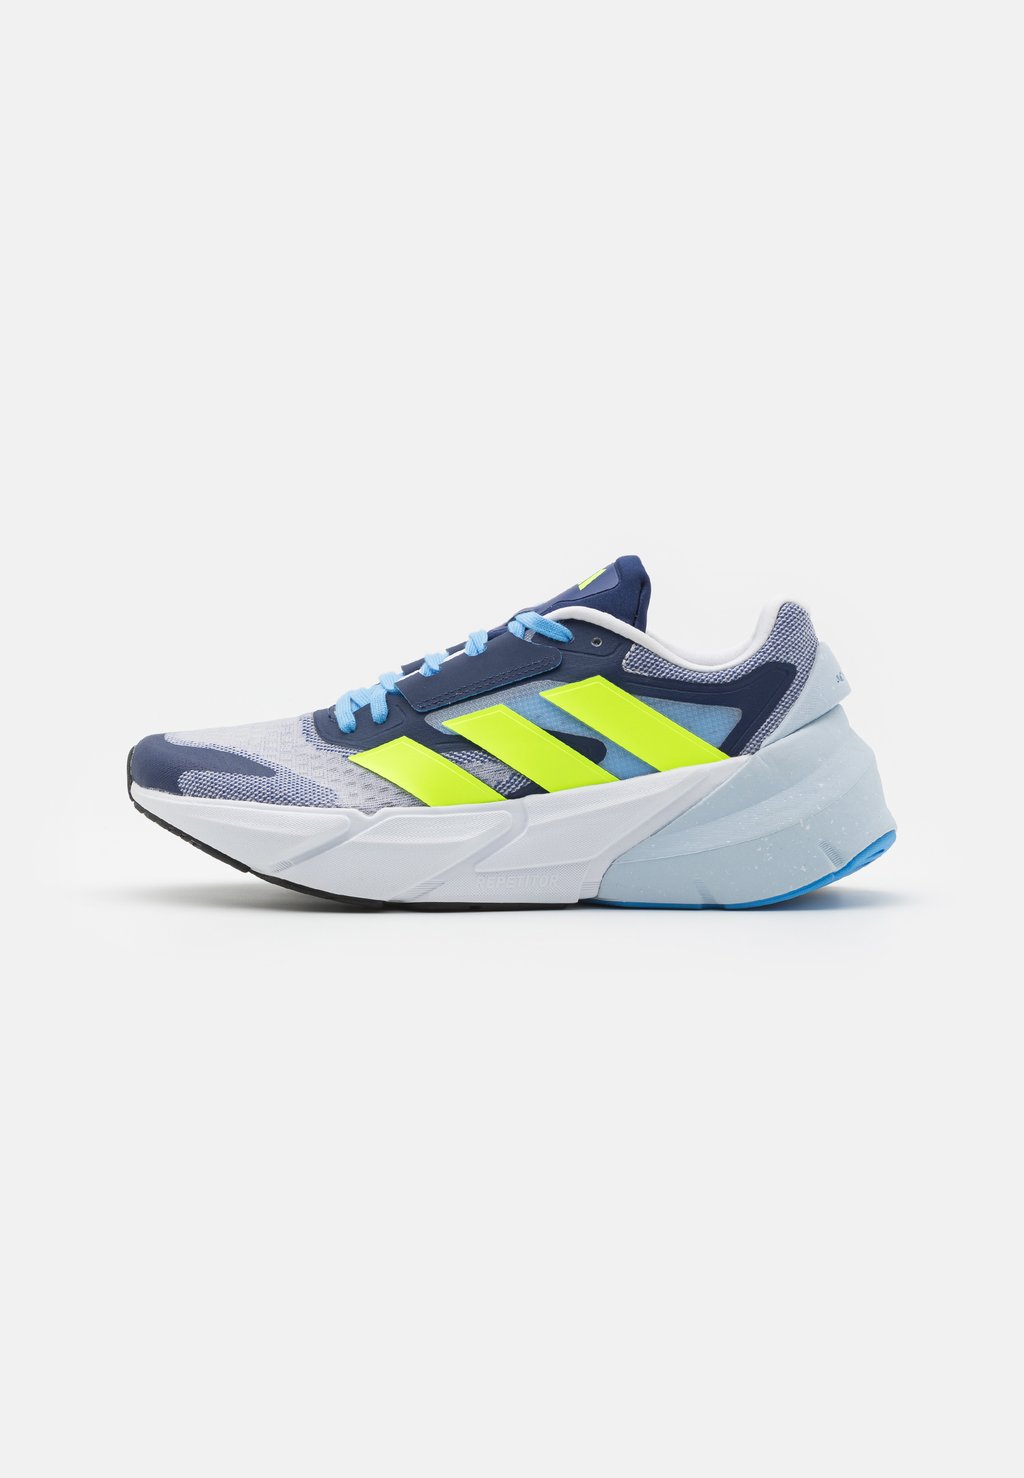 Нейтральные кроссовки Adidas, обувь белого/светло-лимонного/темно-синего цвета кроссовки ewing 33 white alaska blue lemon